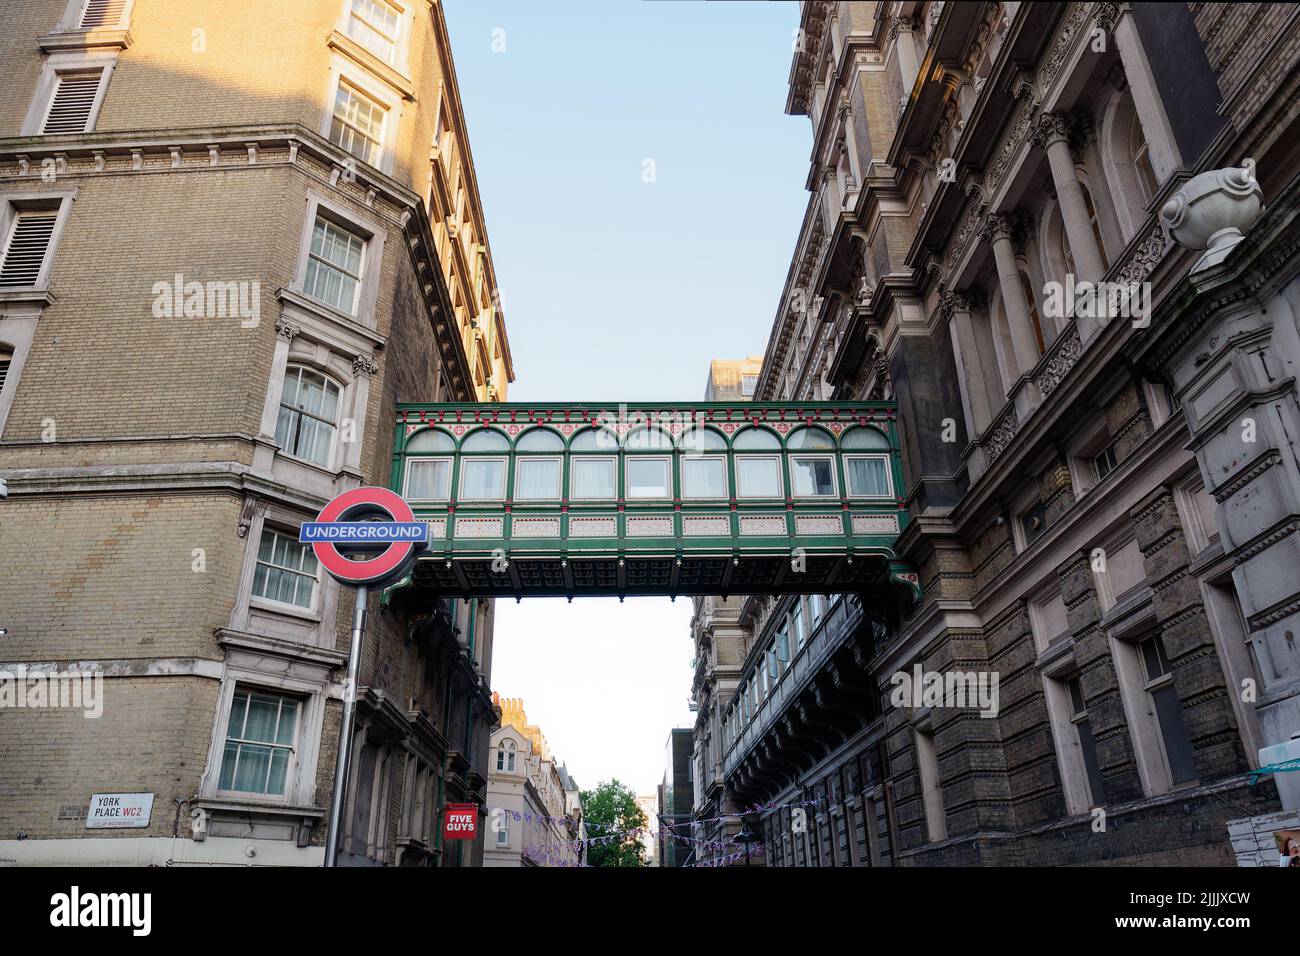 Londra, Greater London, Inghilterra, 22 2022 giugno: Villiers Street con un ponte ornato che collega l'edificio e un cartello della metropolitana. Foto Stock